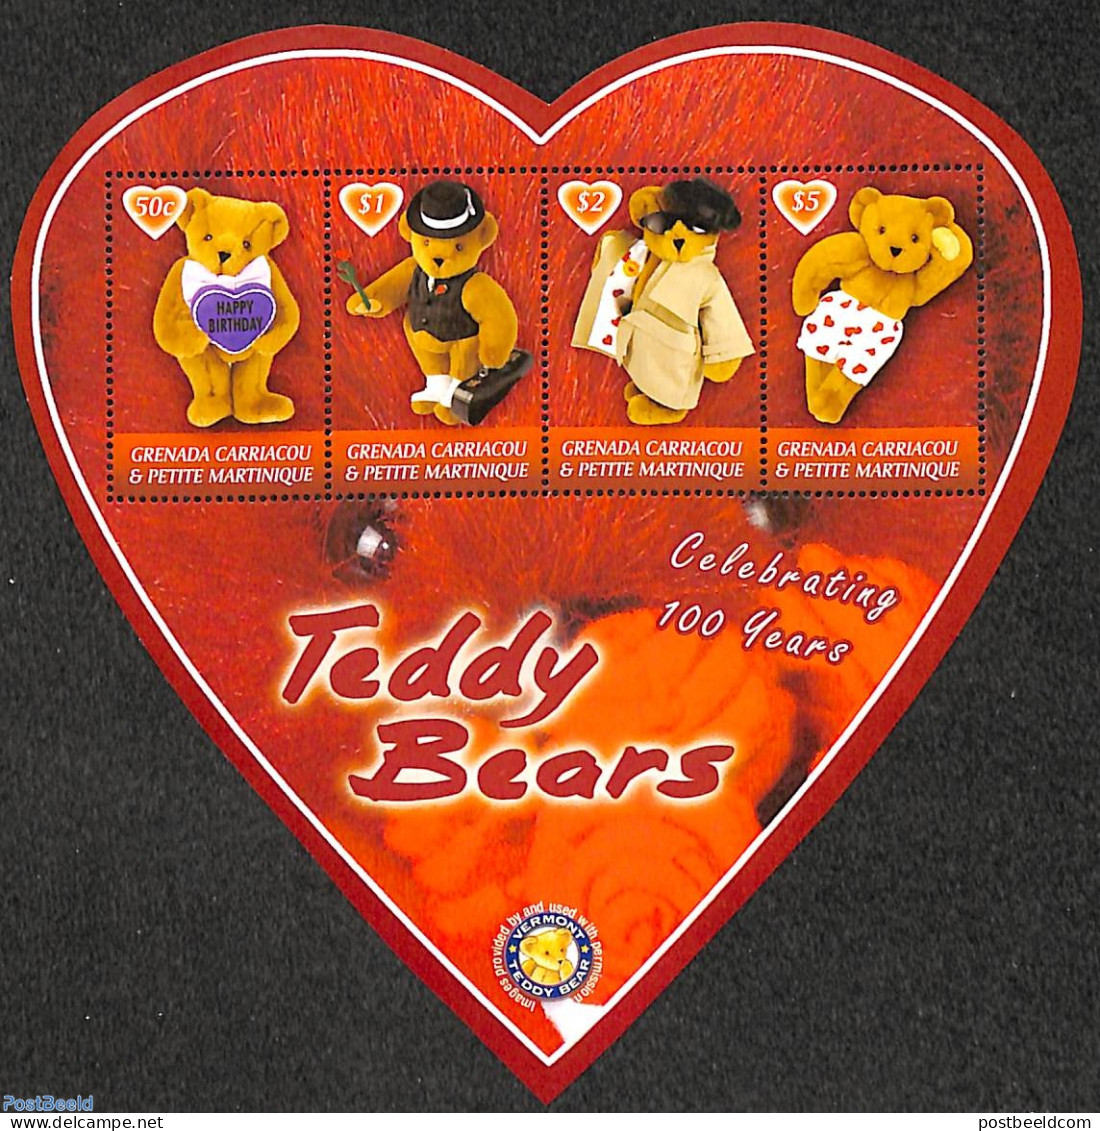 Grenada Grenadines 2002 Teddy Bears 4v M/s, Heart Shape, Mint NH, Various - Teddy Bears - Toys & Children's Games - Grenada (1974-...)